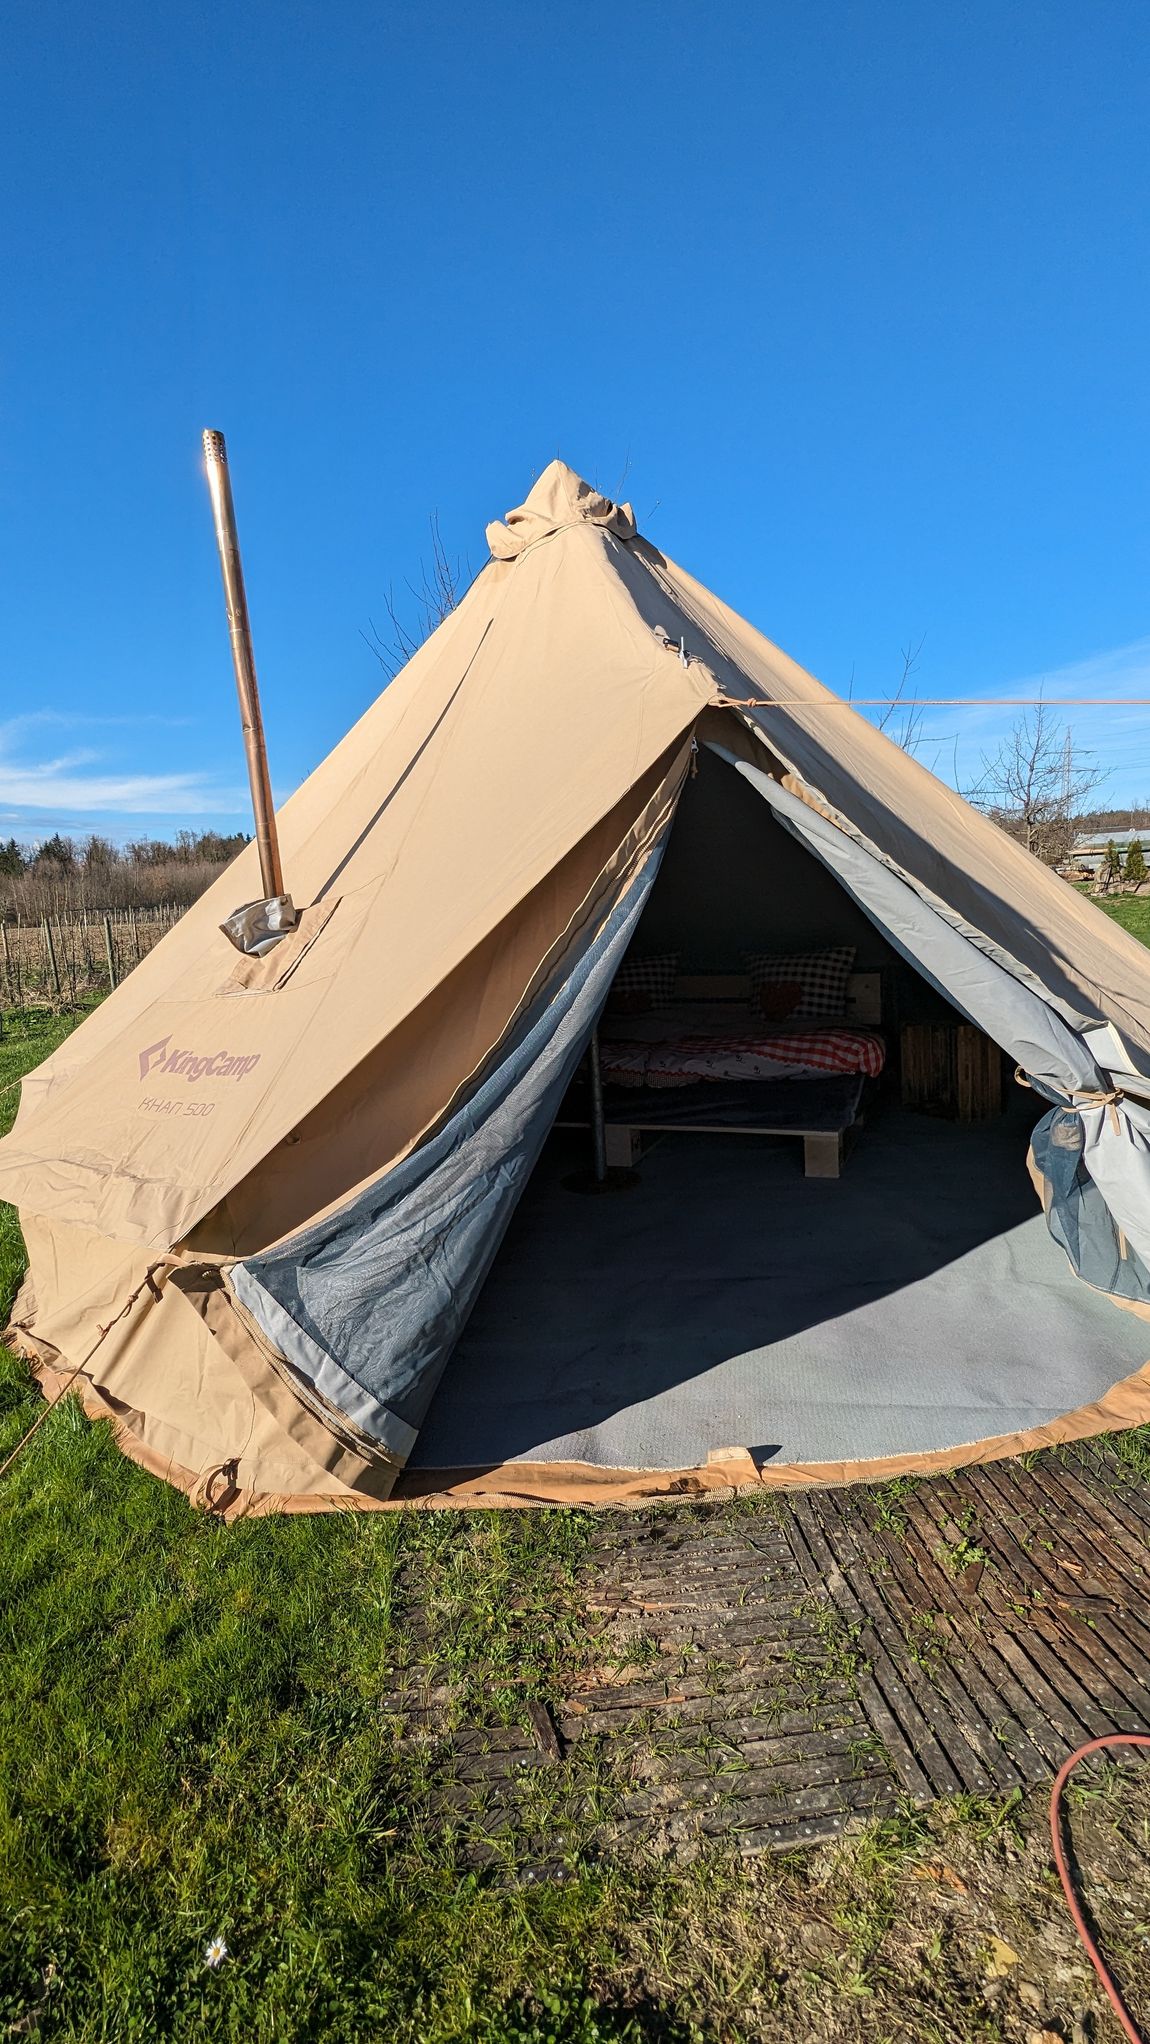 Romantik-Zelt am Obstgarten nahe des Bodensees